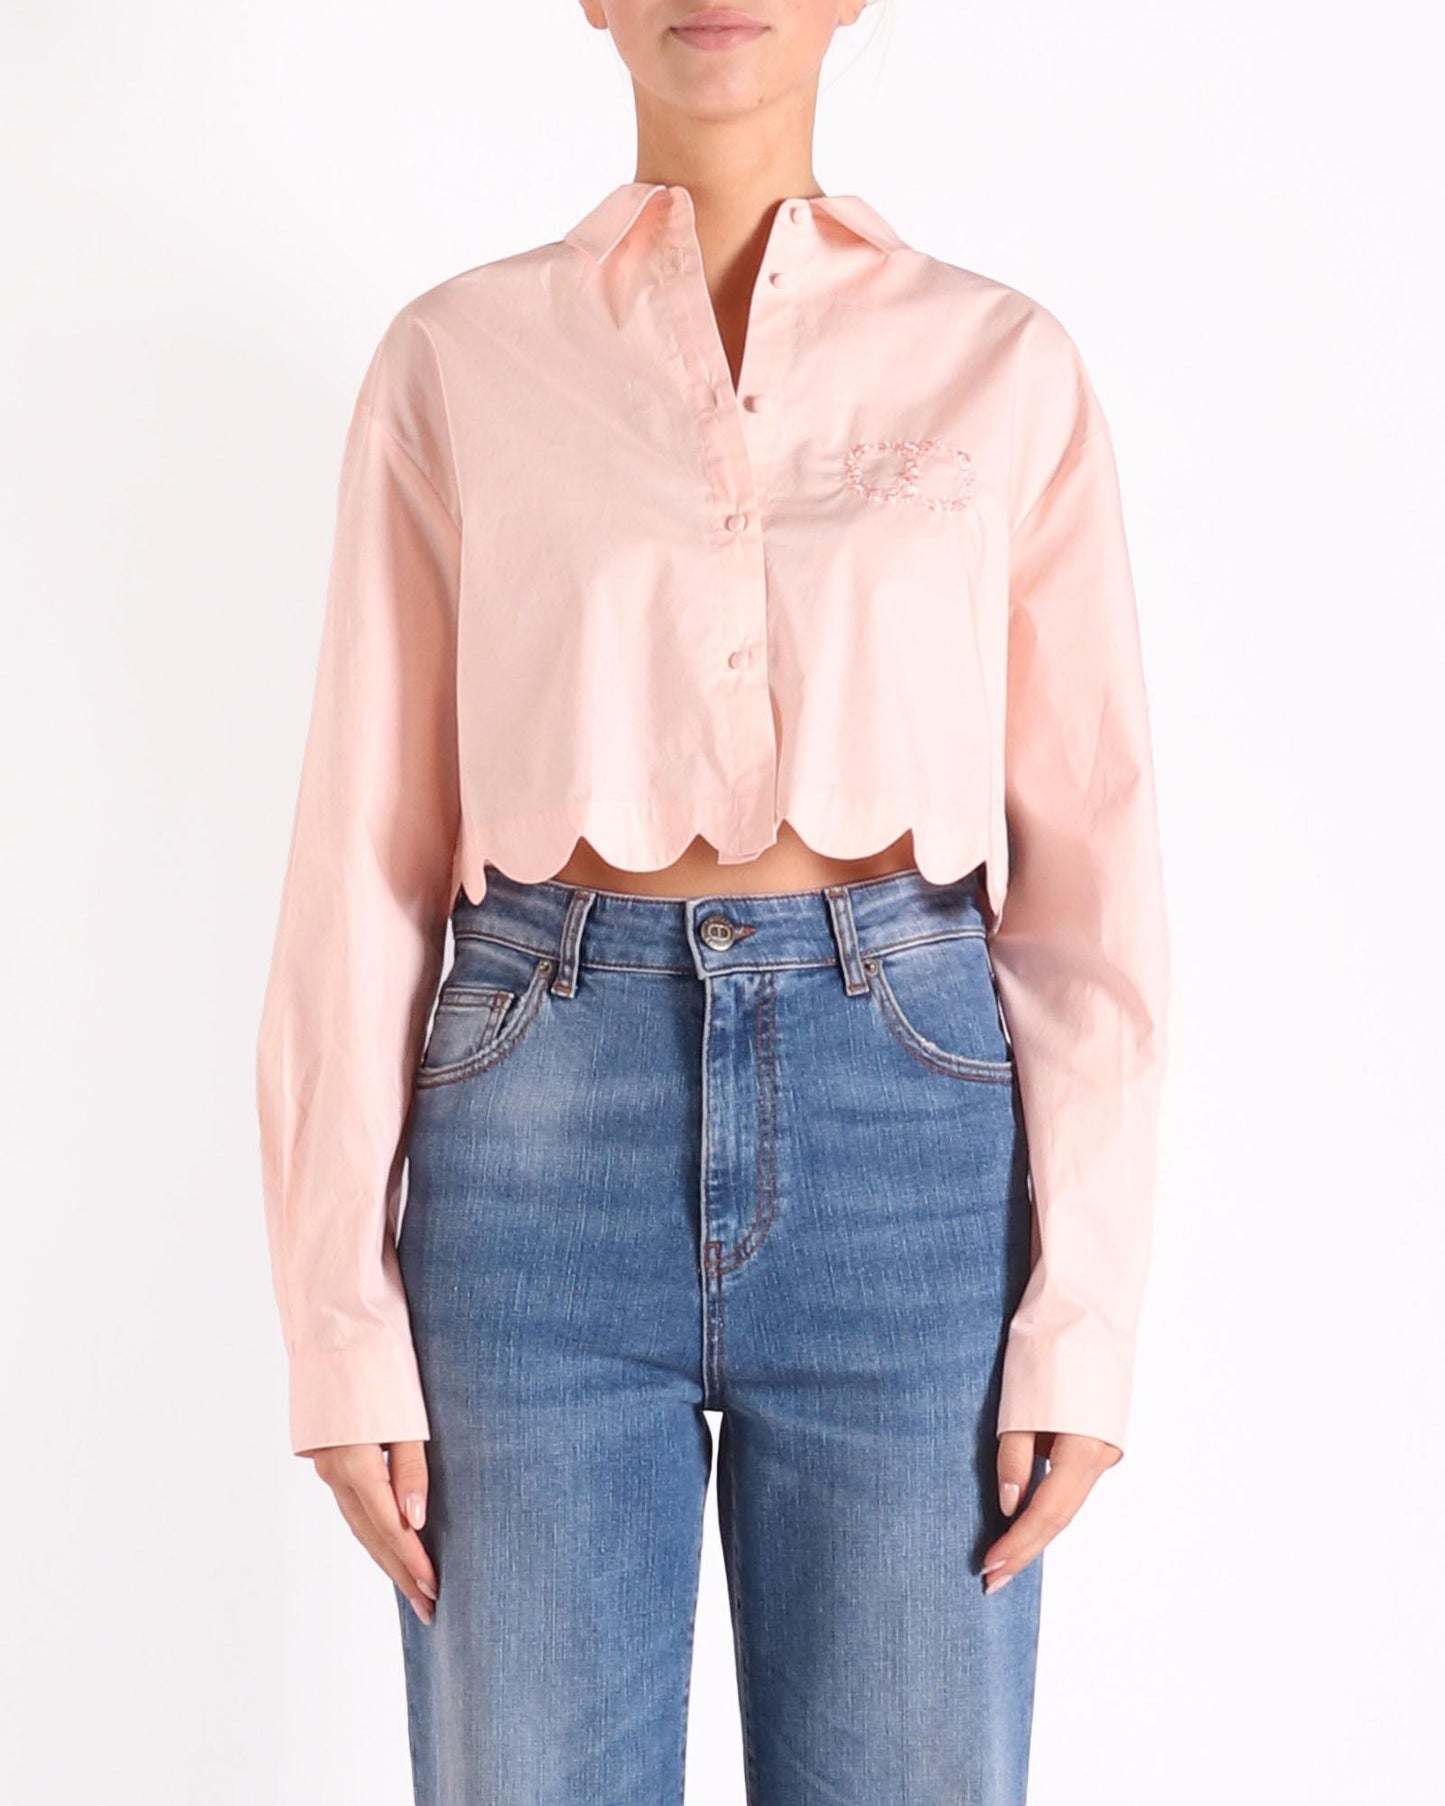 Twinset blouse in de kleur roze